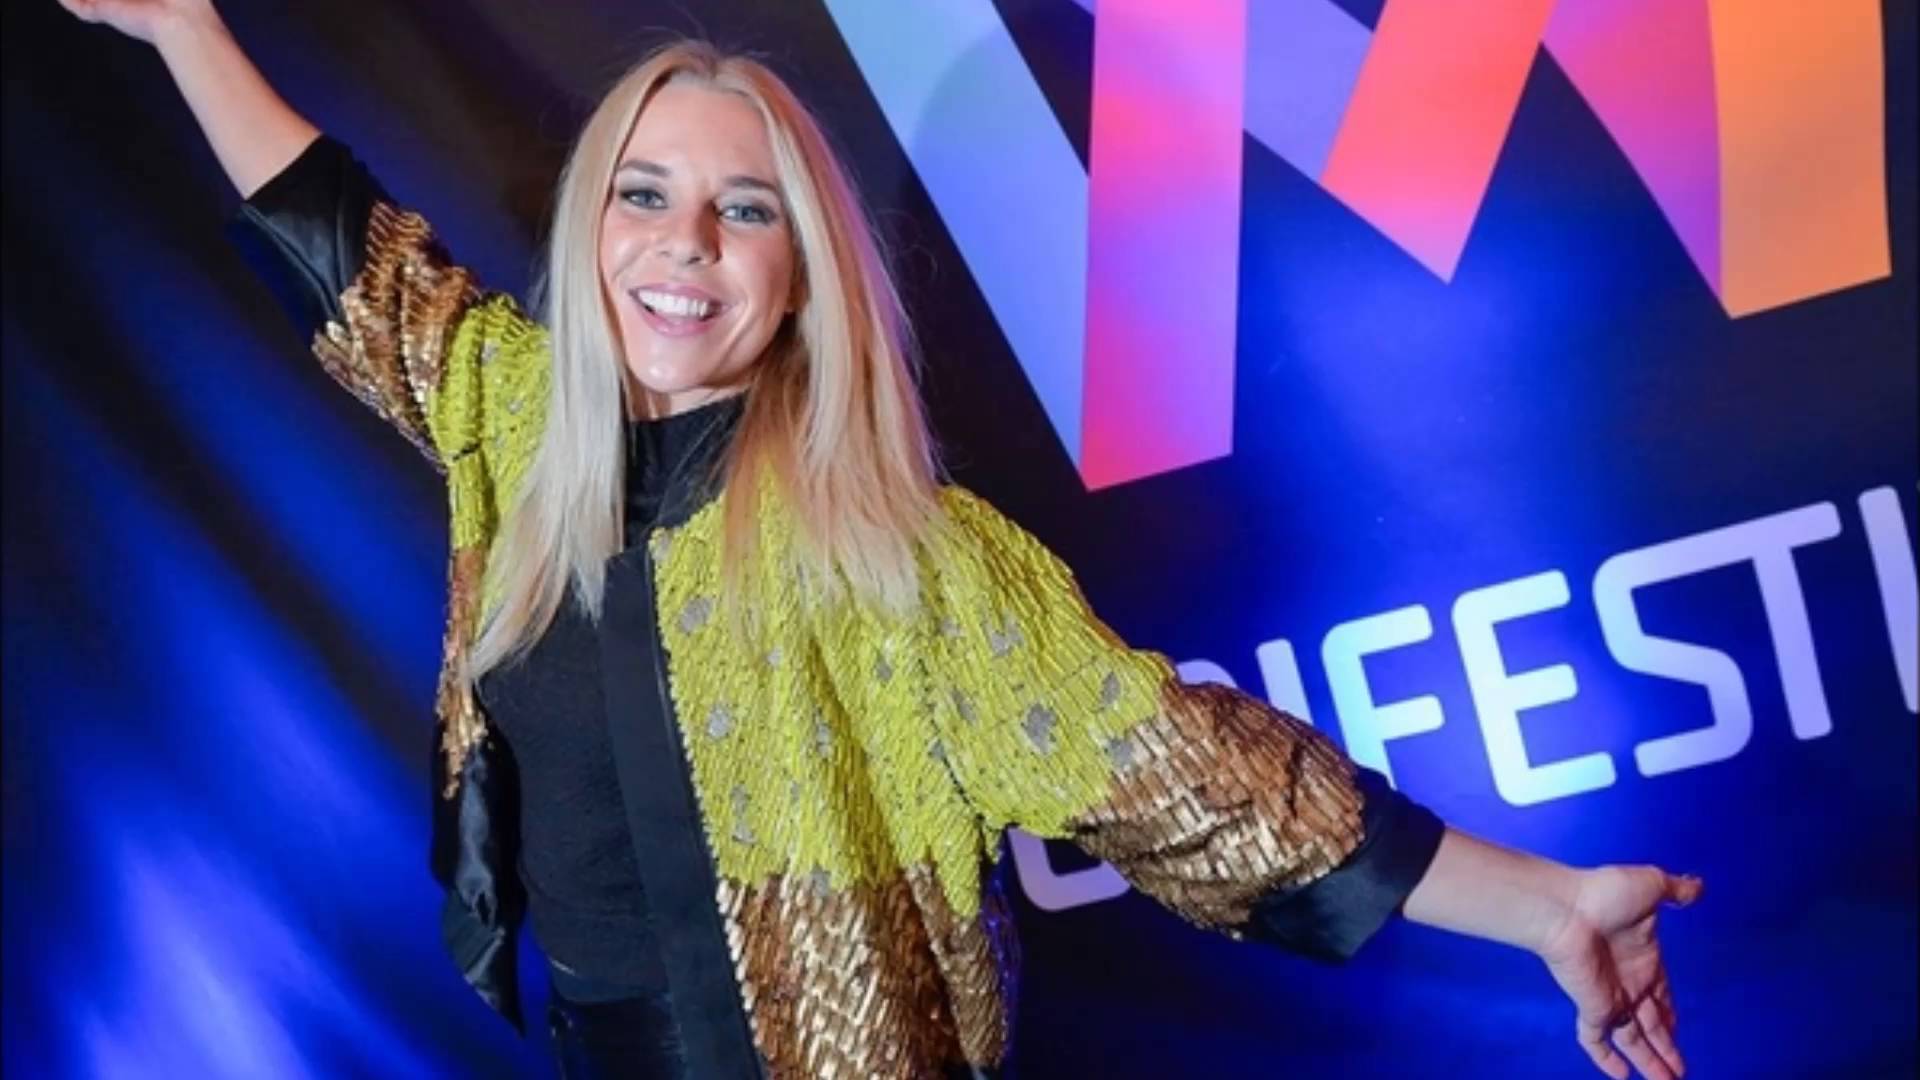 Sweden: Krista Siegfrids returning to Melodifestivalen 2017?